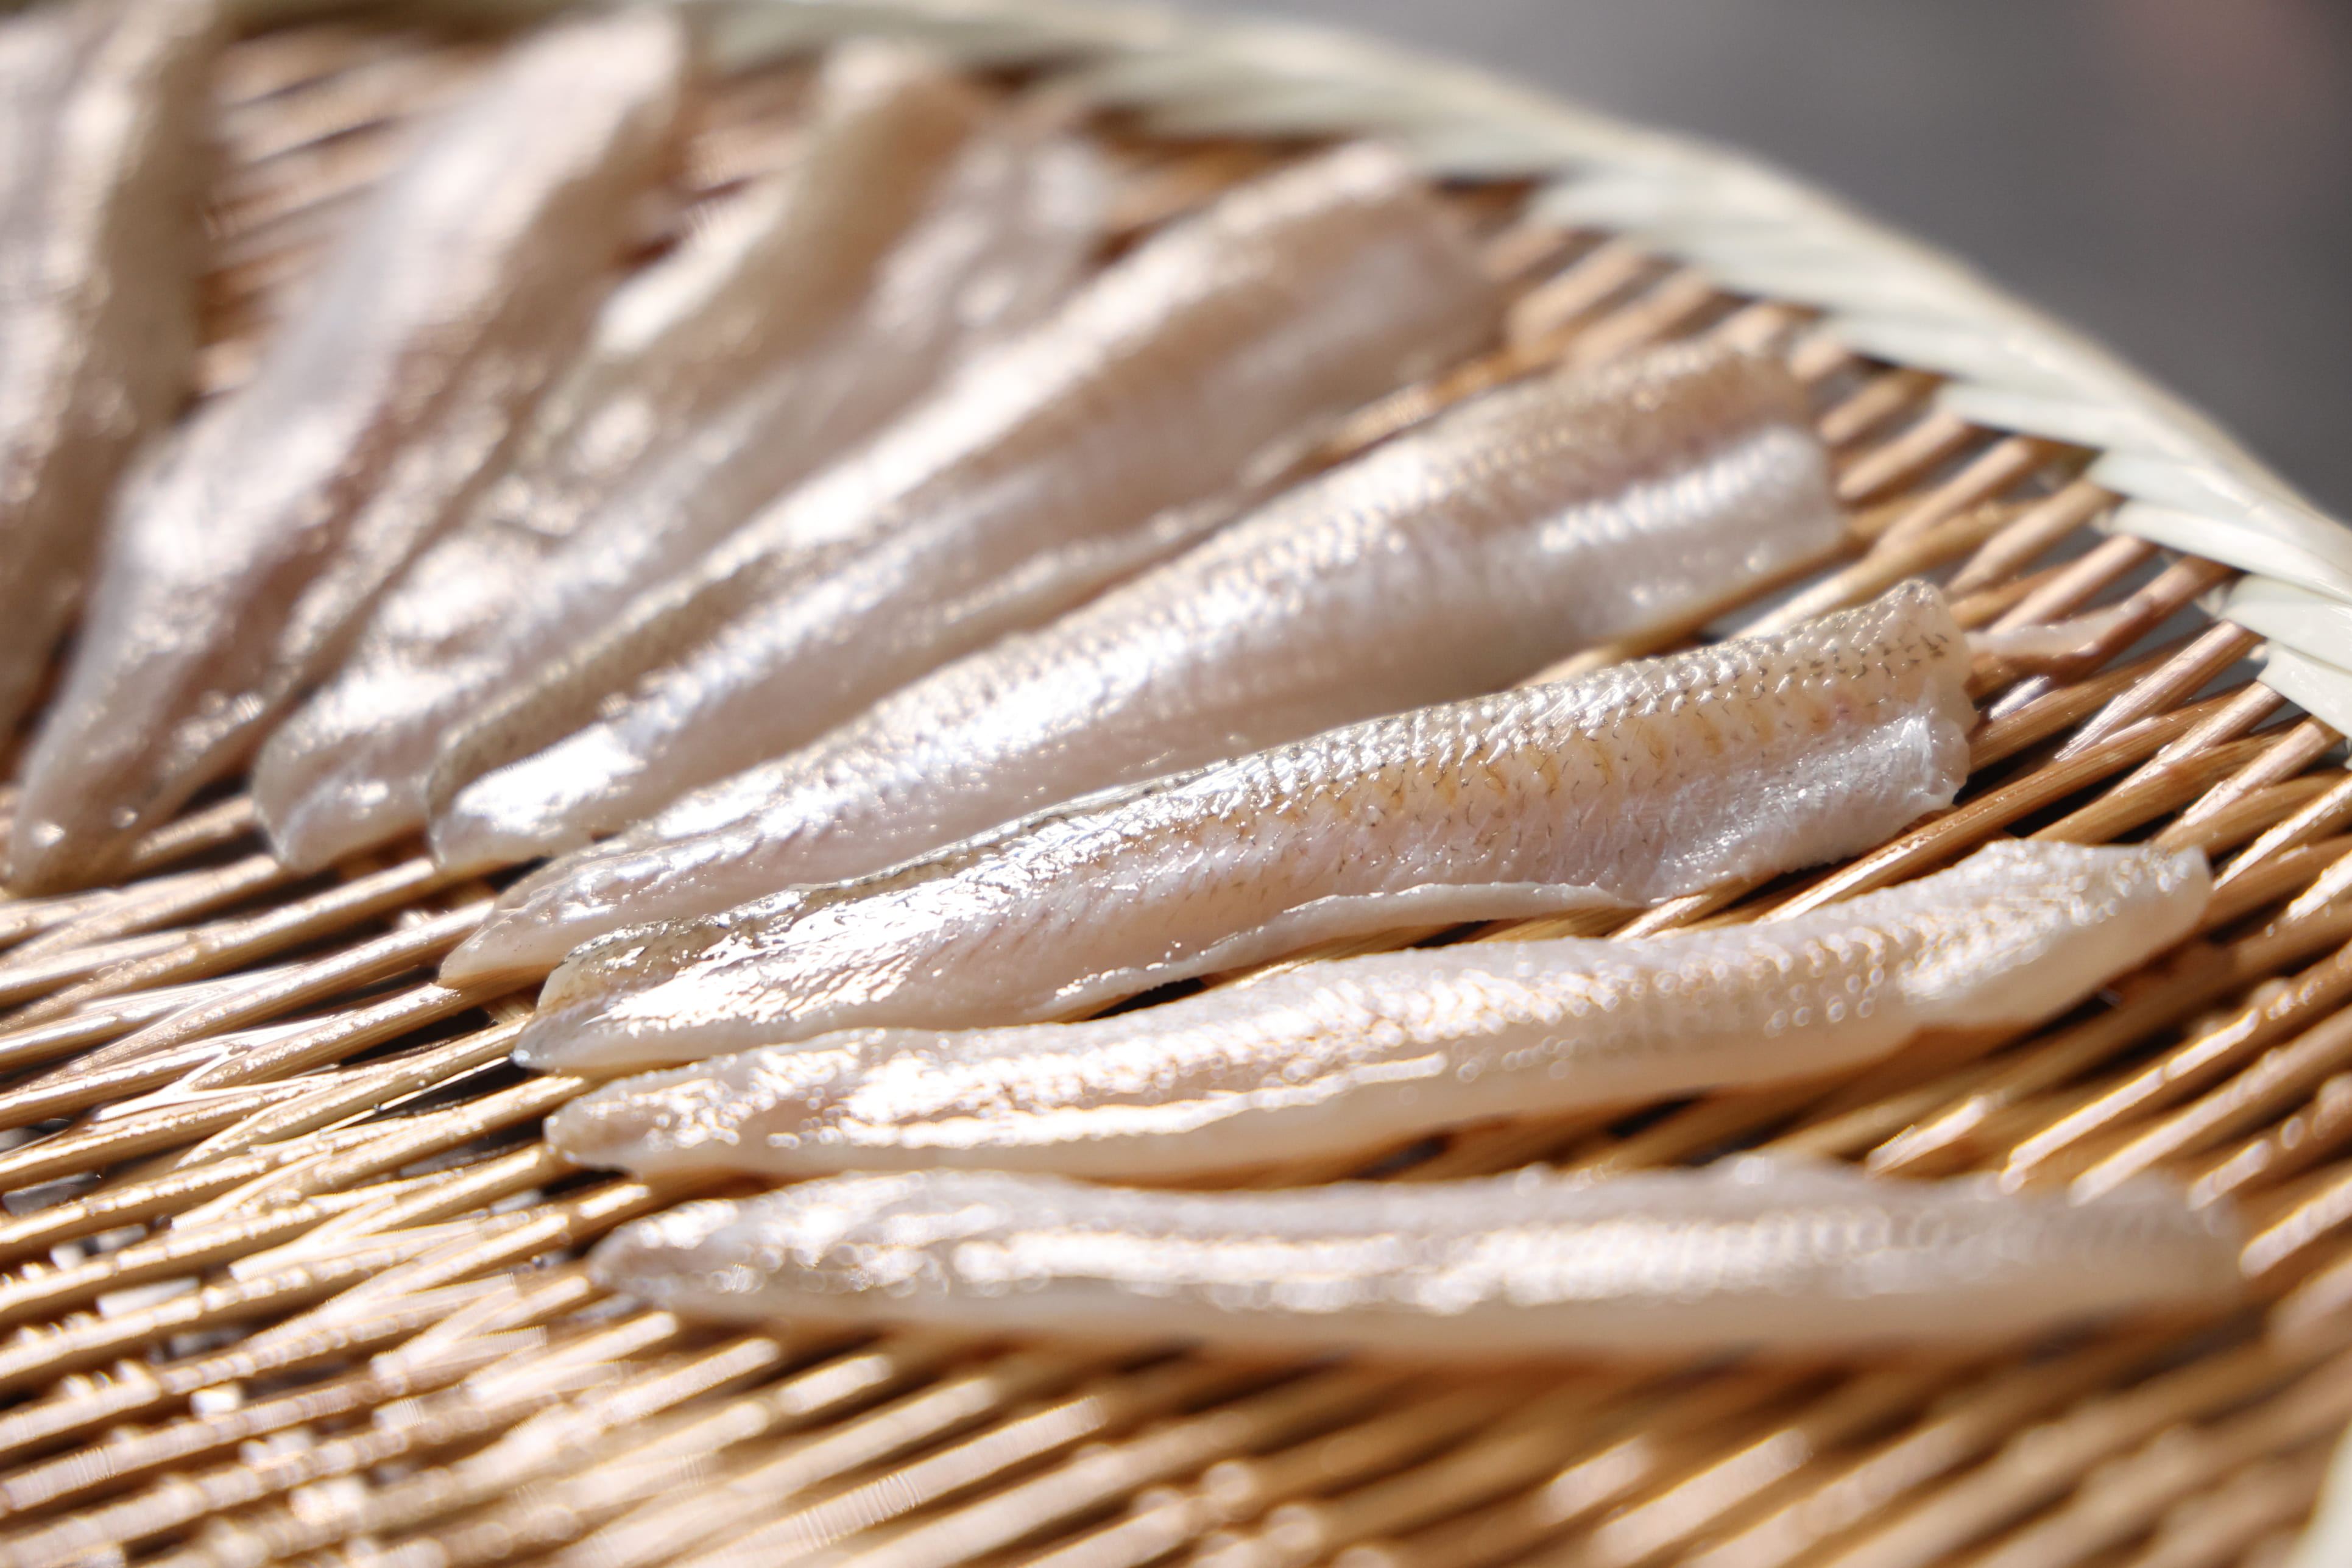 すしのダネ知識 江戸前鮨は穴子の魚竹寿し 継承される江戸前鮨の伝統と文化を愉しむ